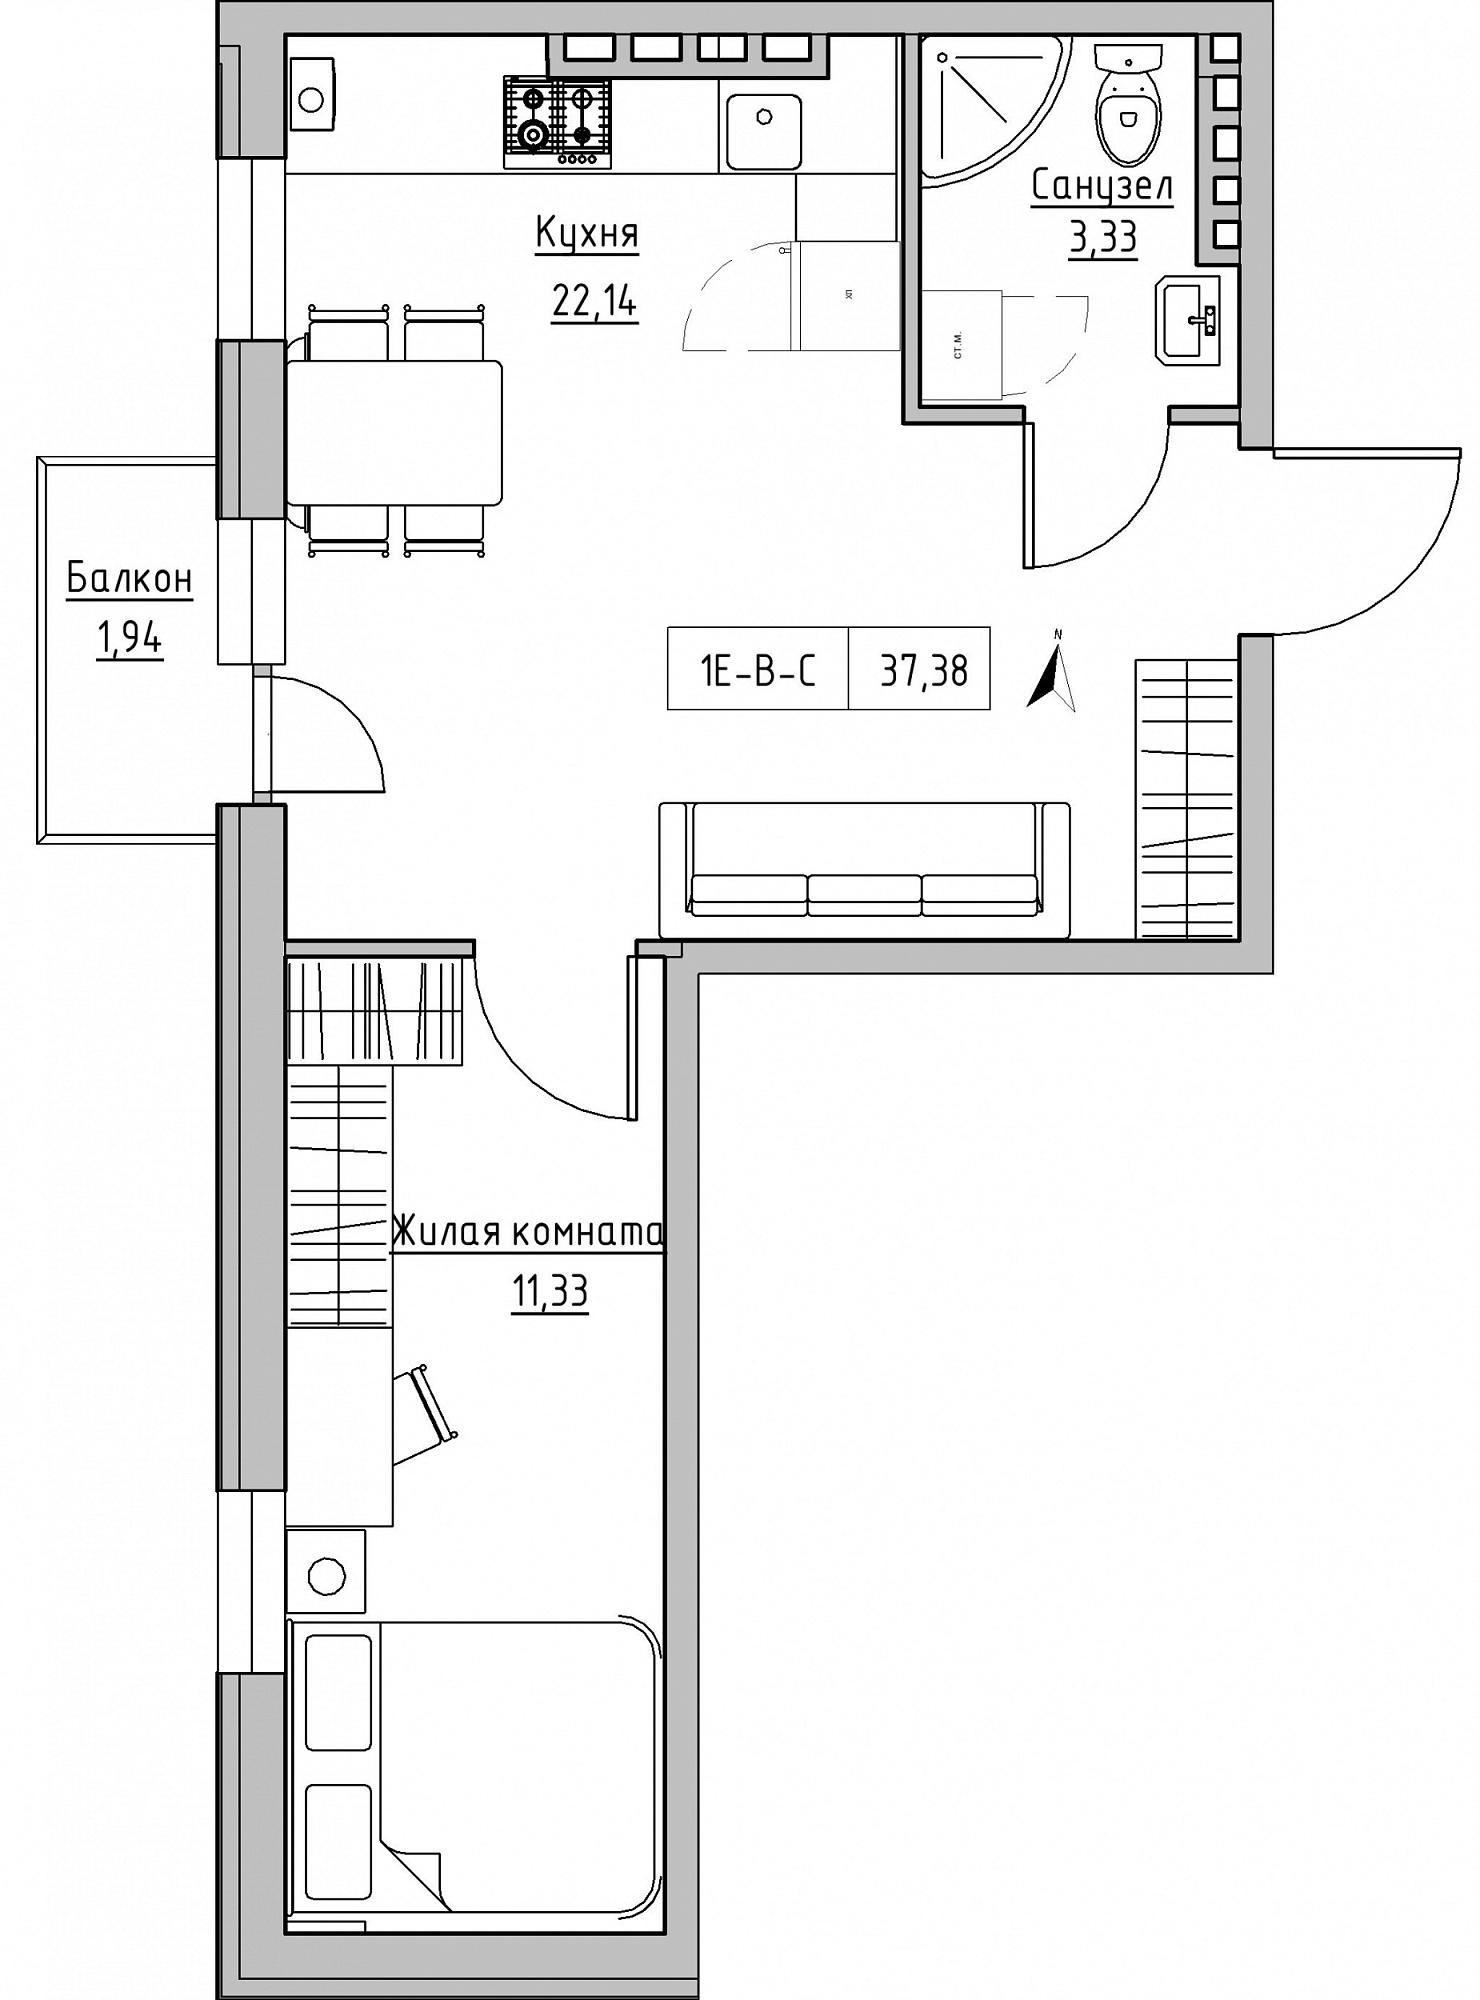 Планування 1-к квартира площею 37.38м2, KS-024-04/0010.